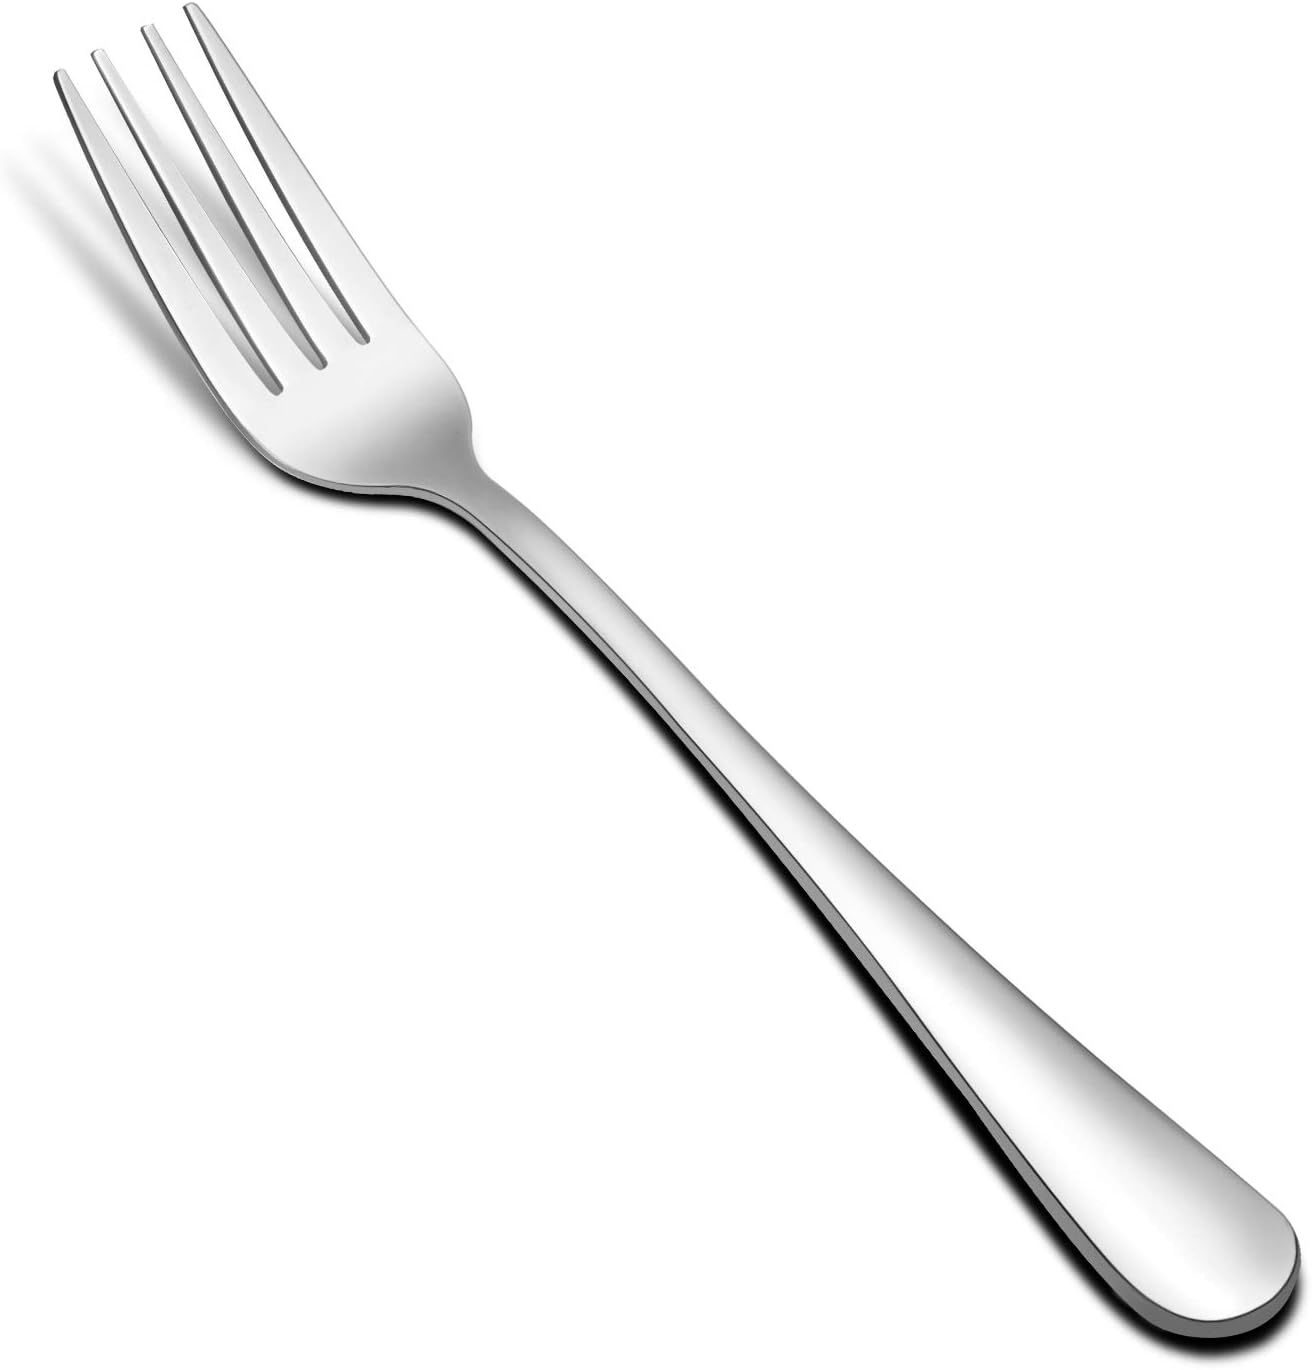 Hiware 12-piece Stainless Steel Salad Forks Dessert Forks Set, Dishwasher Safe, 6.7 Inches